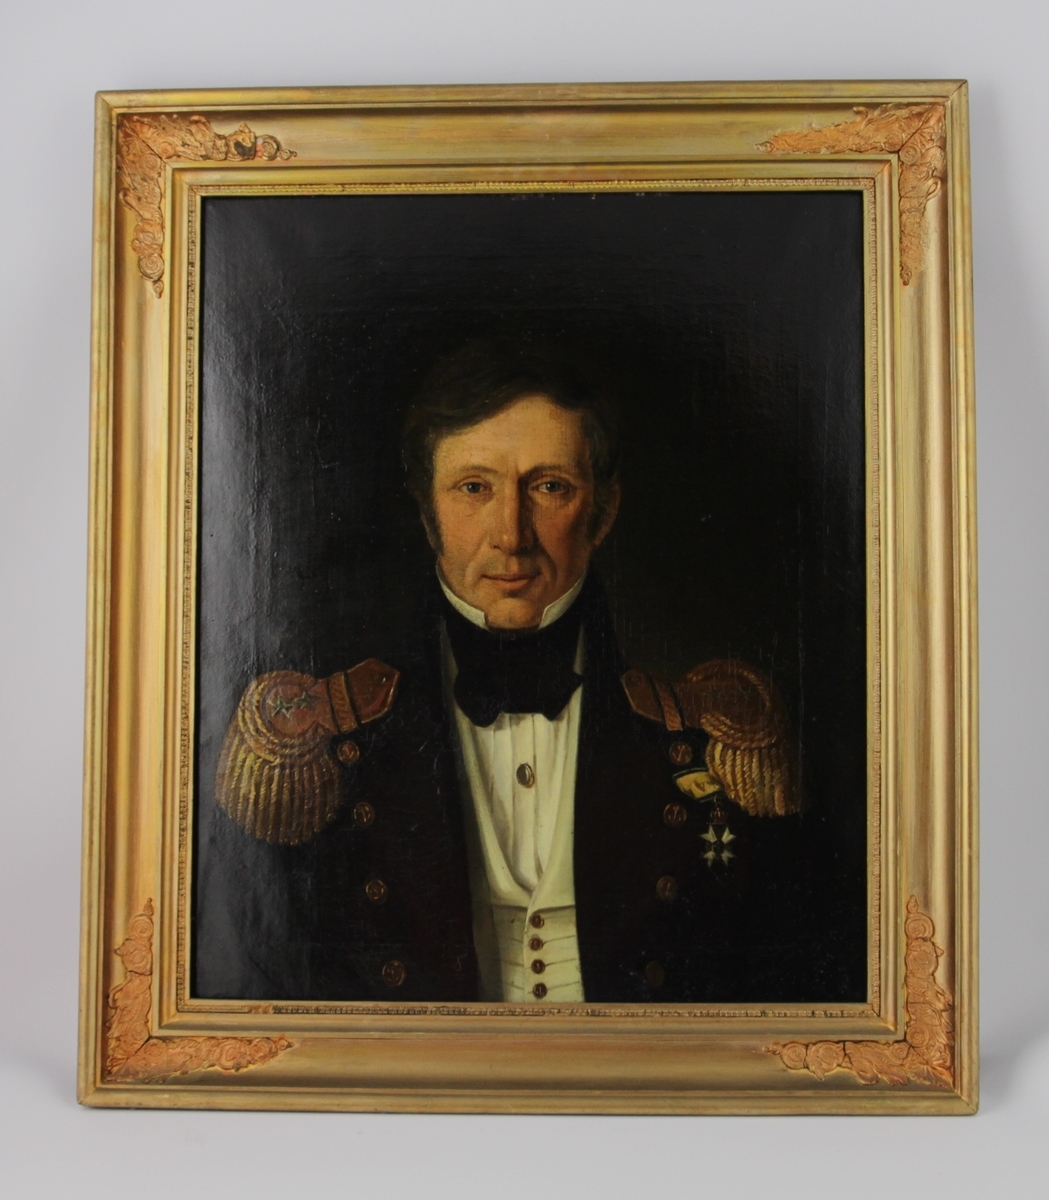 Halvportrett av en mann med gallauniform.